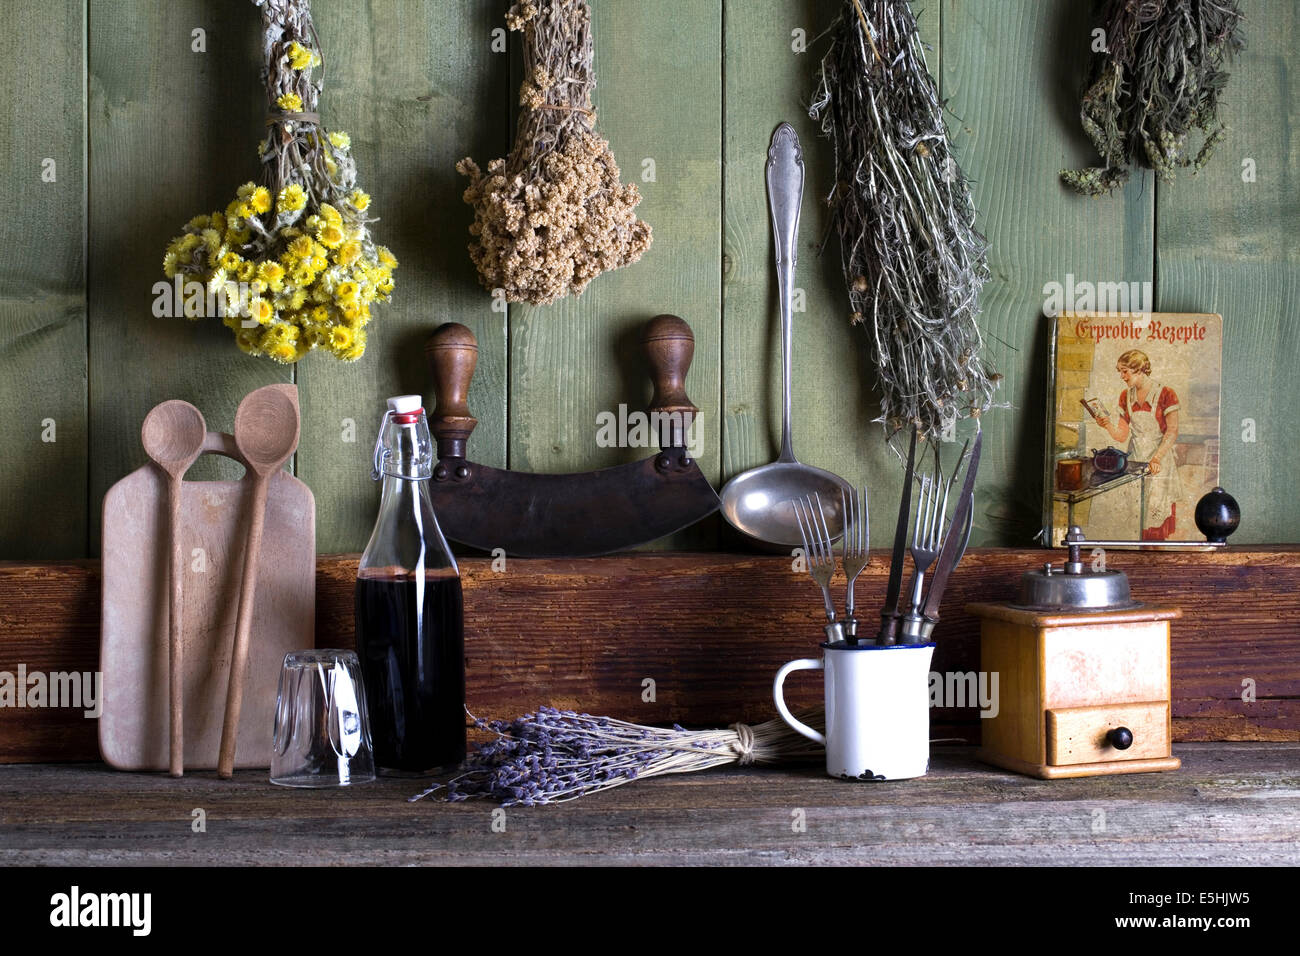 Cuisine rustique vie encore avec des ustensiles de cuisine et d'herbes séchées Banque D'Images